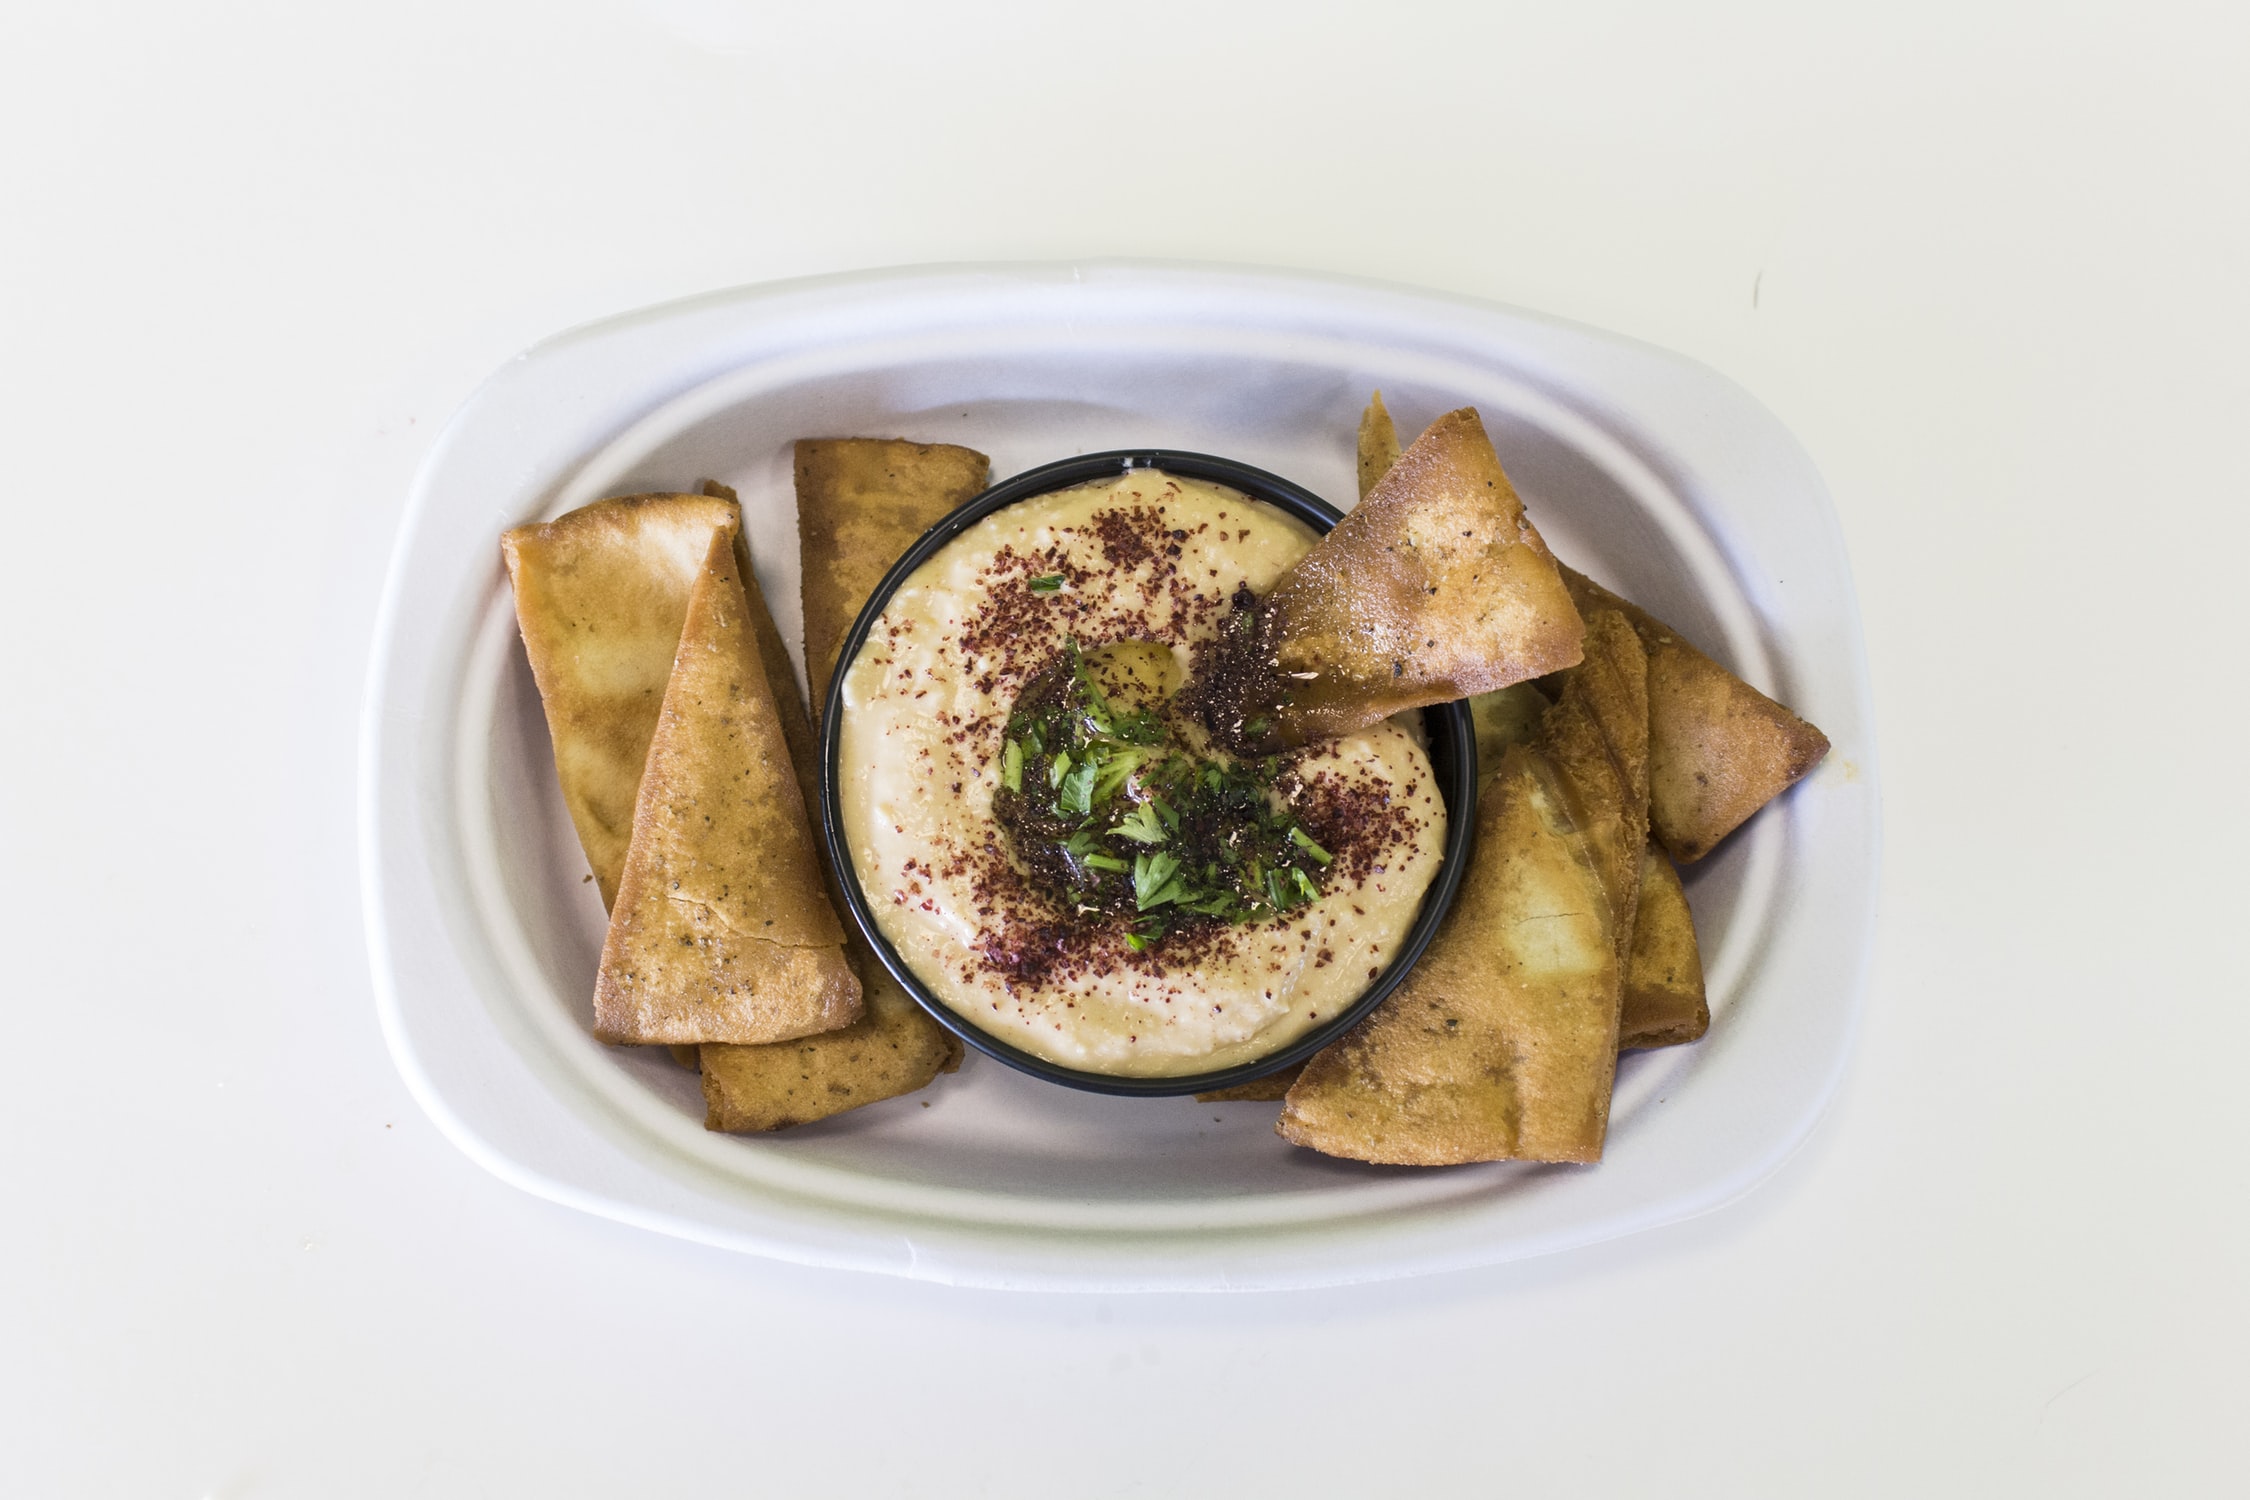 La forma más común de consumir hummus es acompañarlo con un delicioso pan árabe. 
(Foto Prensa Libre: Servicios)